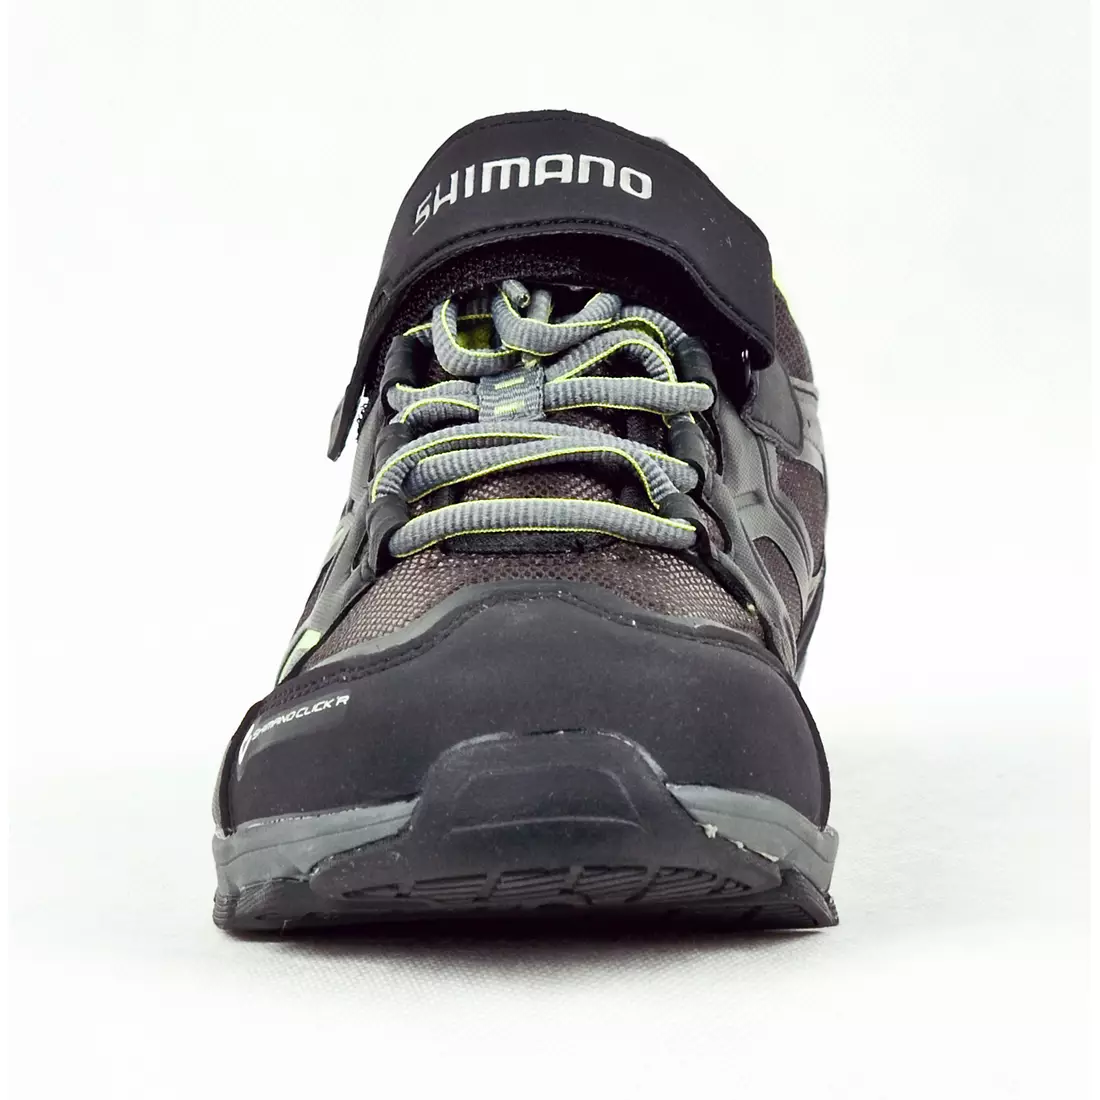 SHIMANO SH-CT70 - rekreačná cyklistická obuv so systémom CLICK'R, farba: čierna a zelená